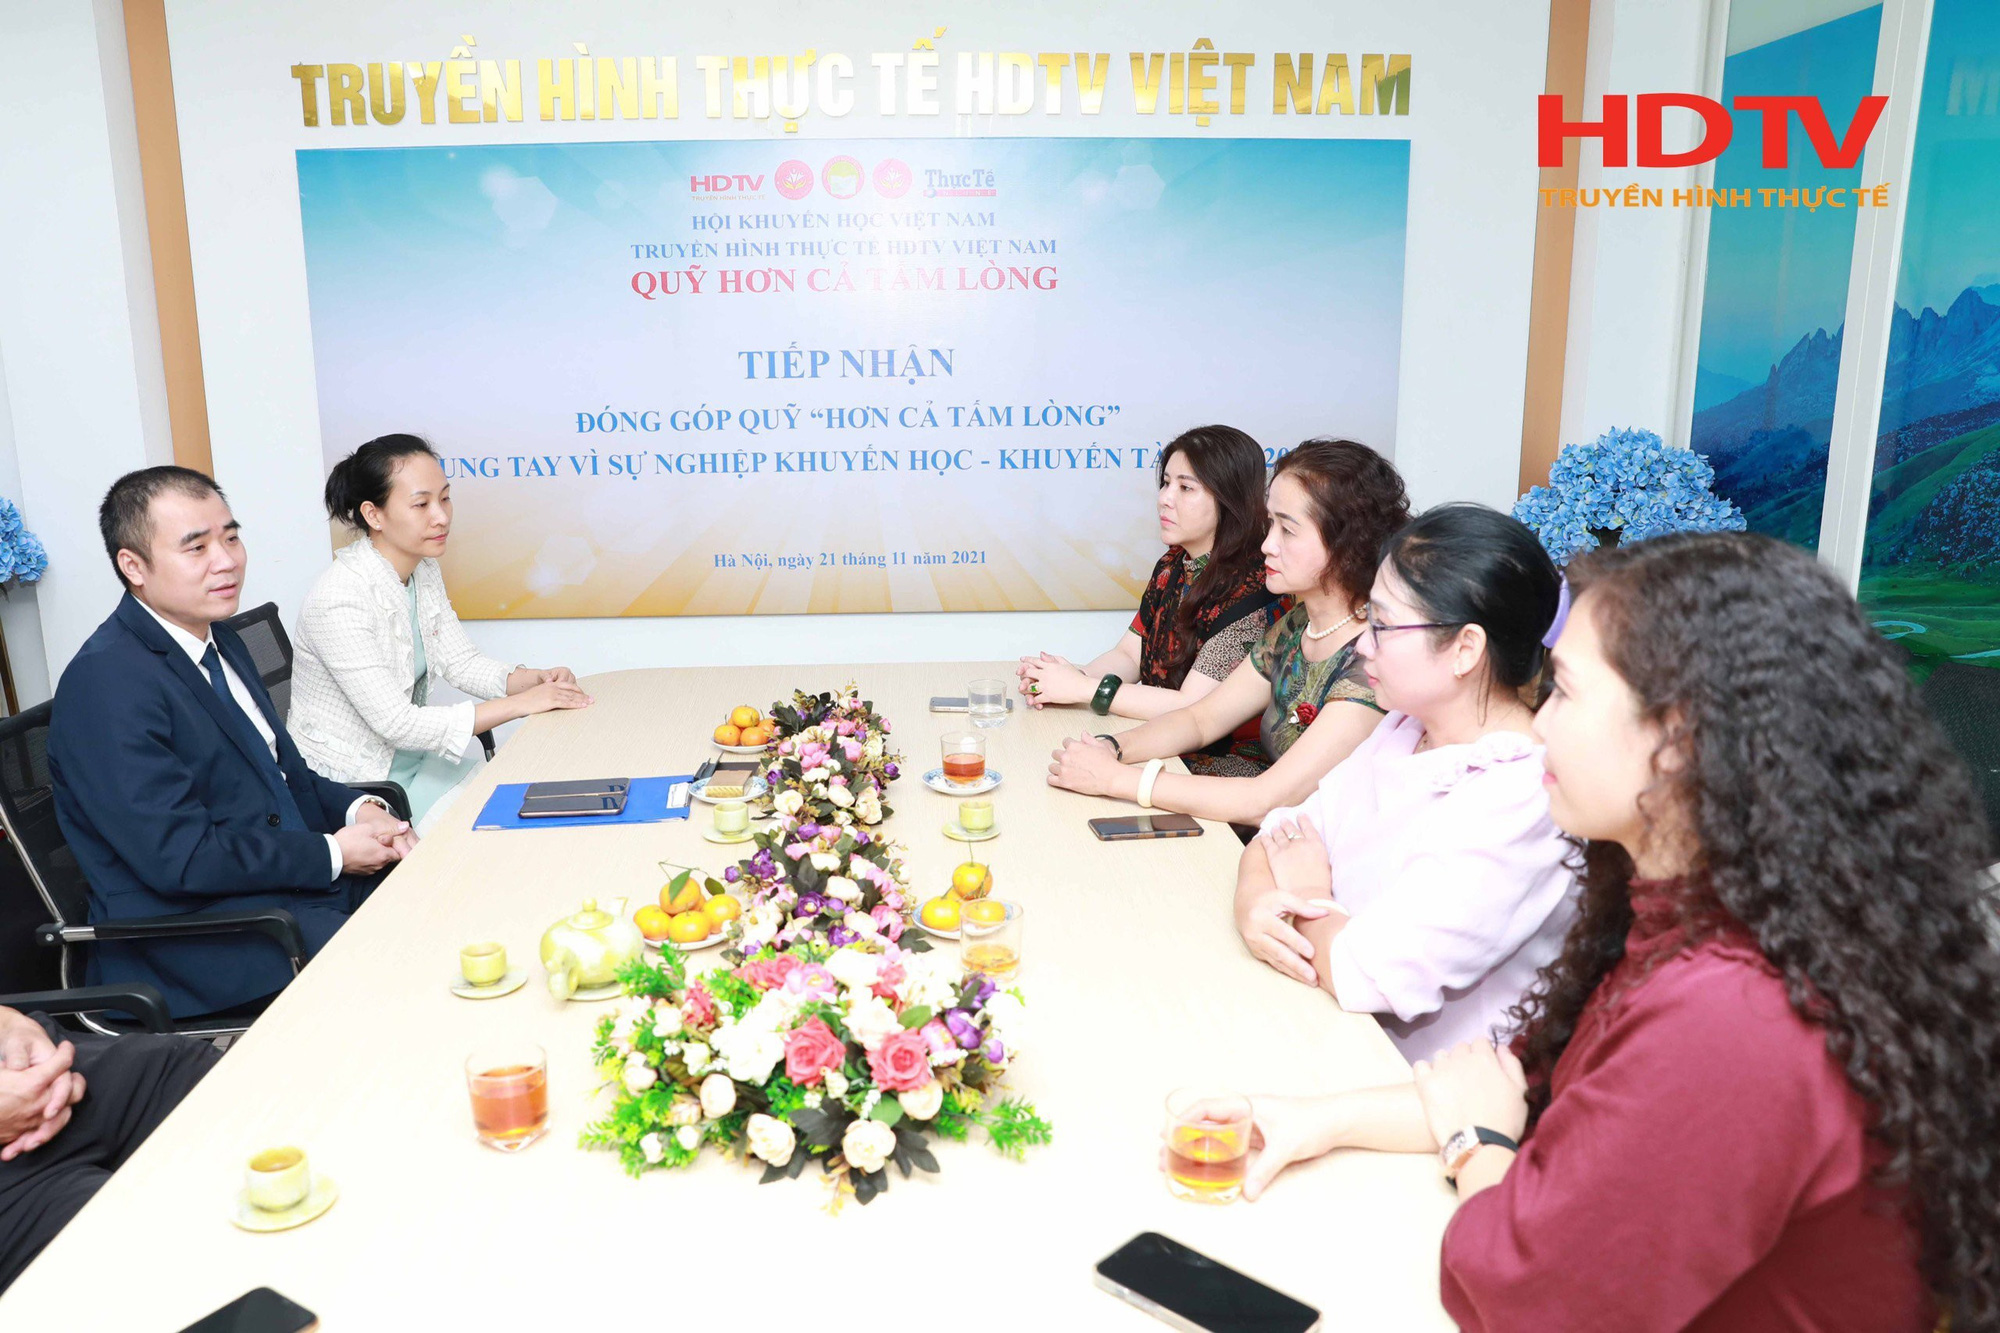 HDTV Việt Nam thực hiện công tác thiện nguyện - Khuyến học Quý 4 năm 2021 - Ảnh 1.